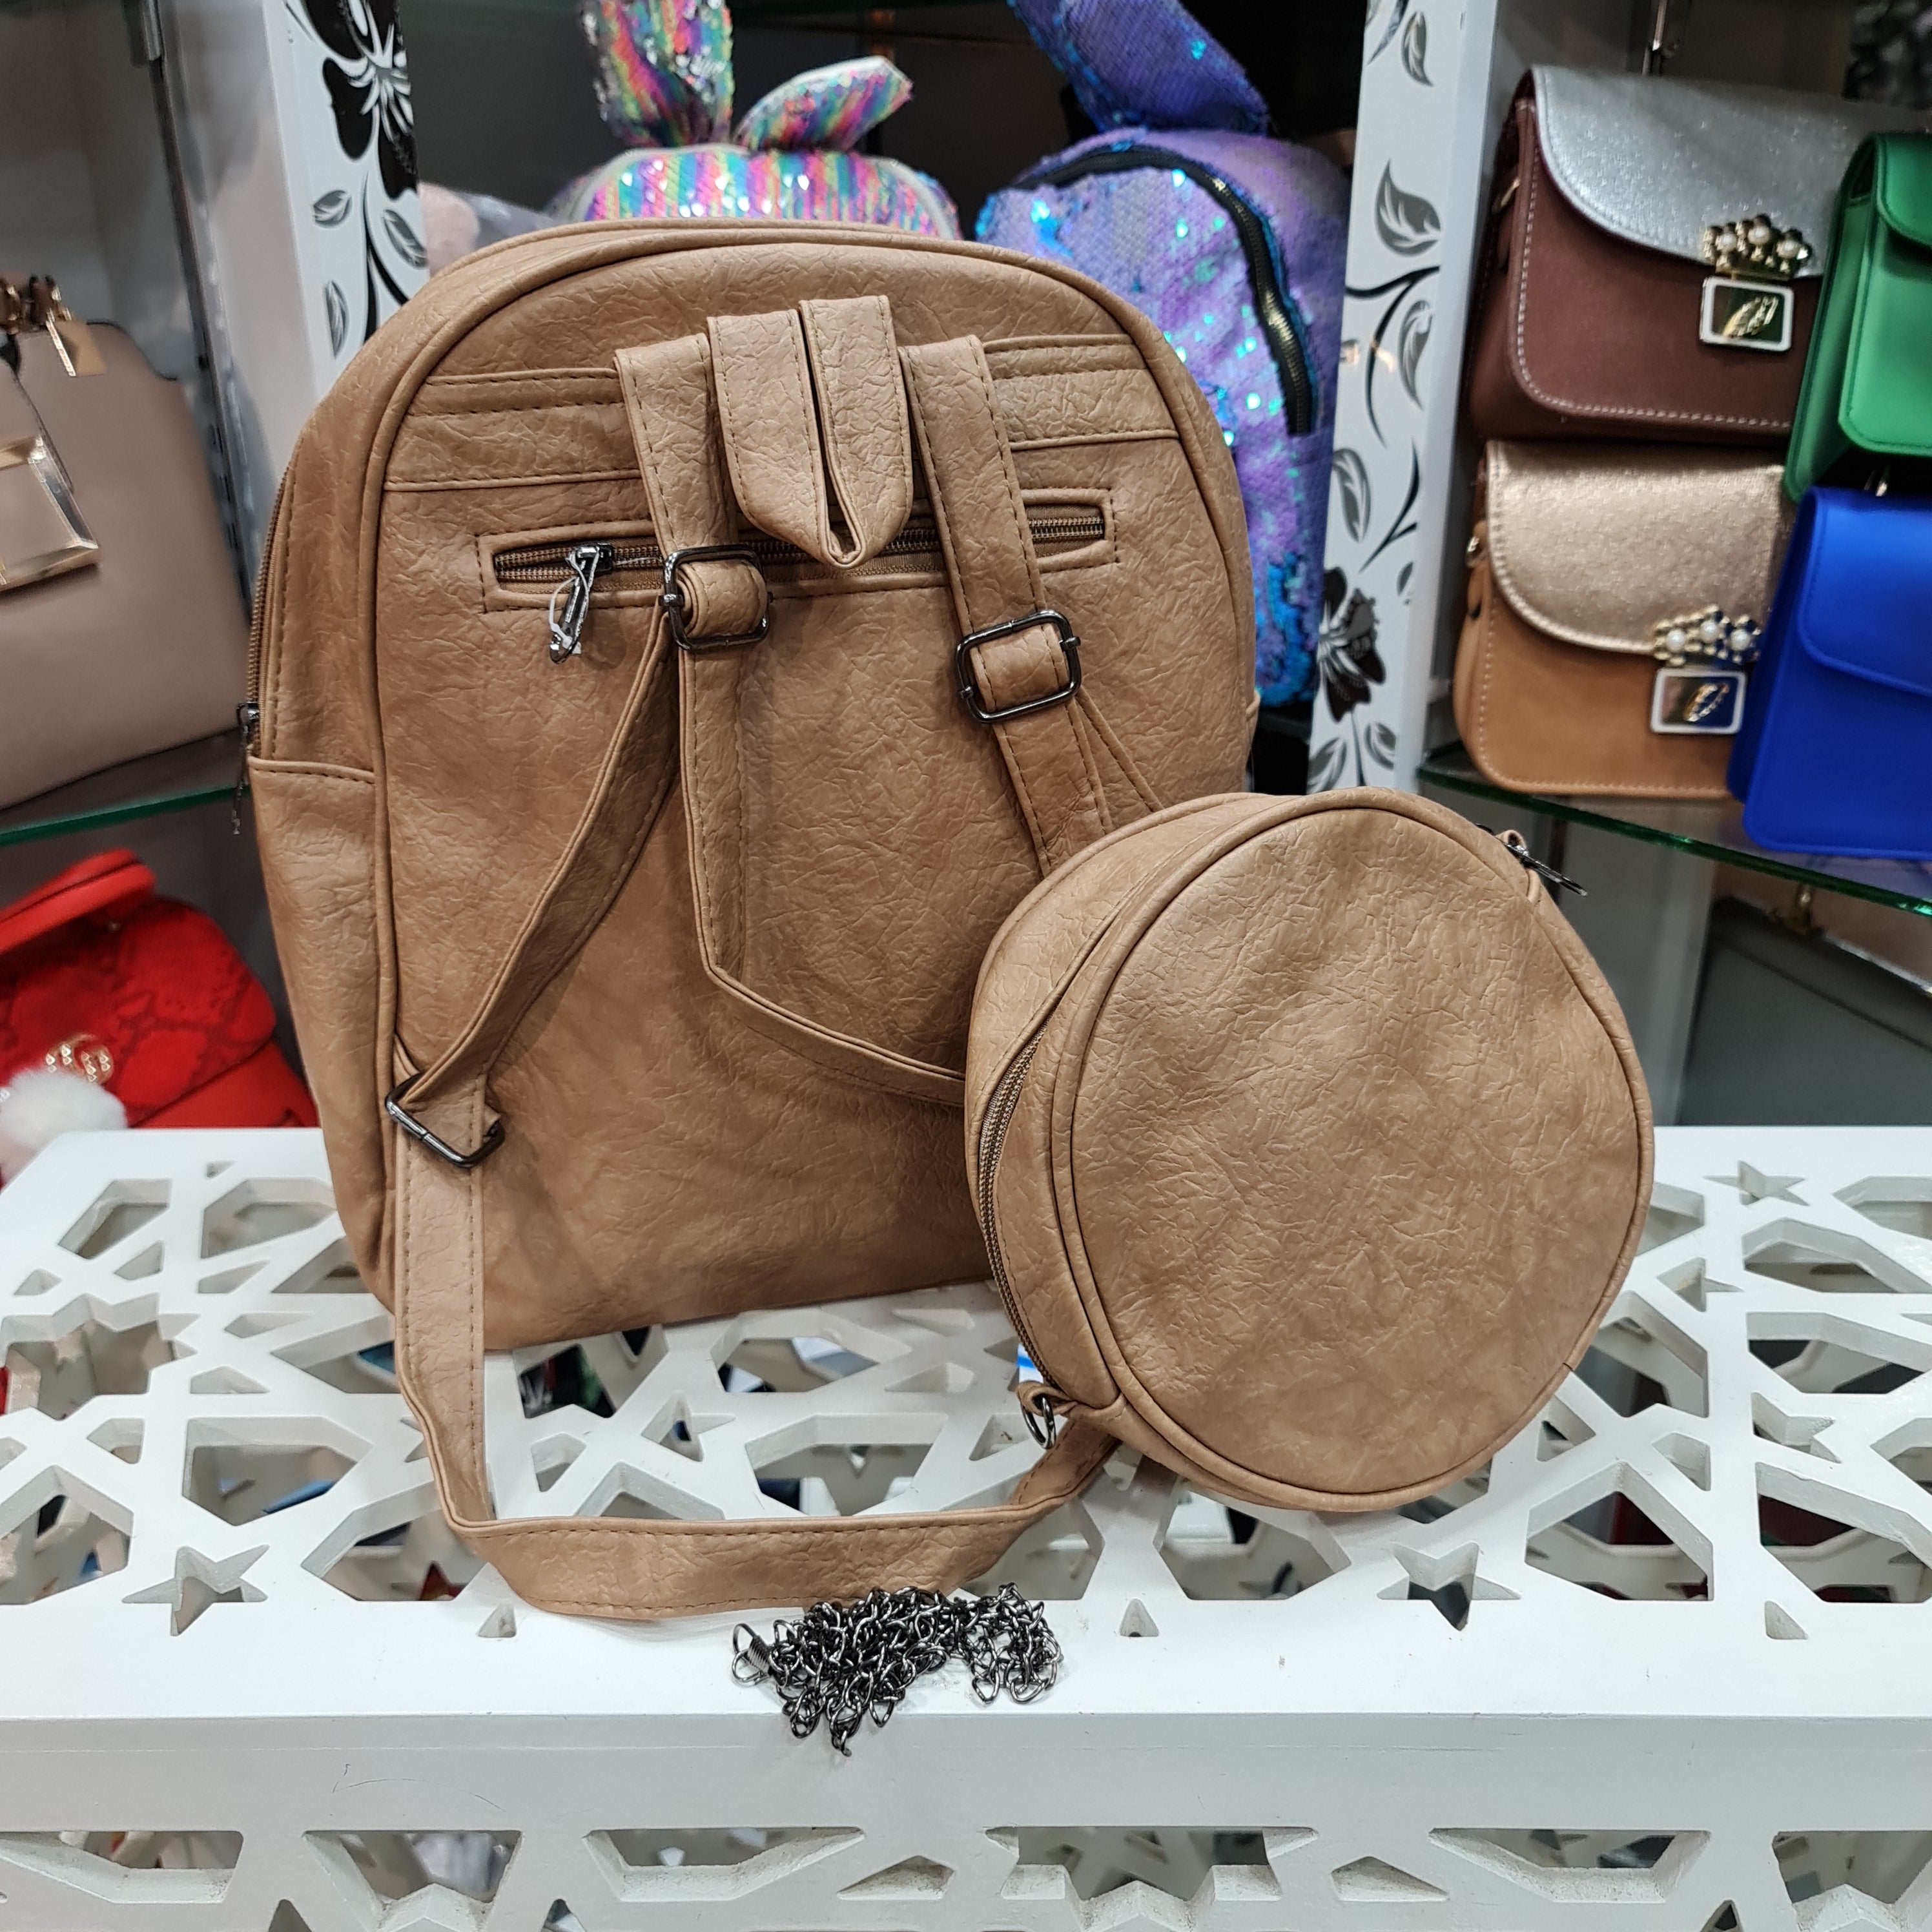 two bagpacks - Maha fashions -  bagpacks